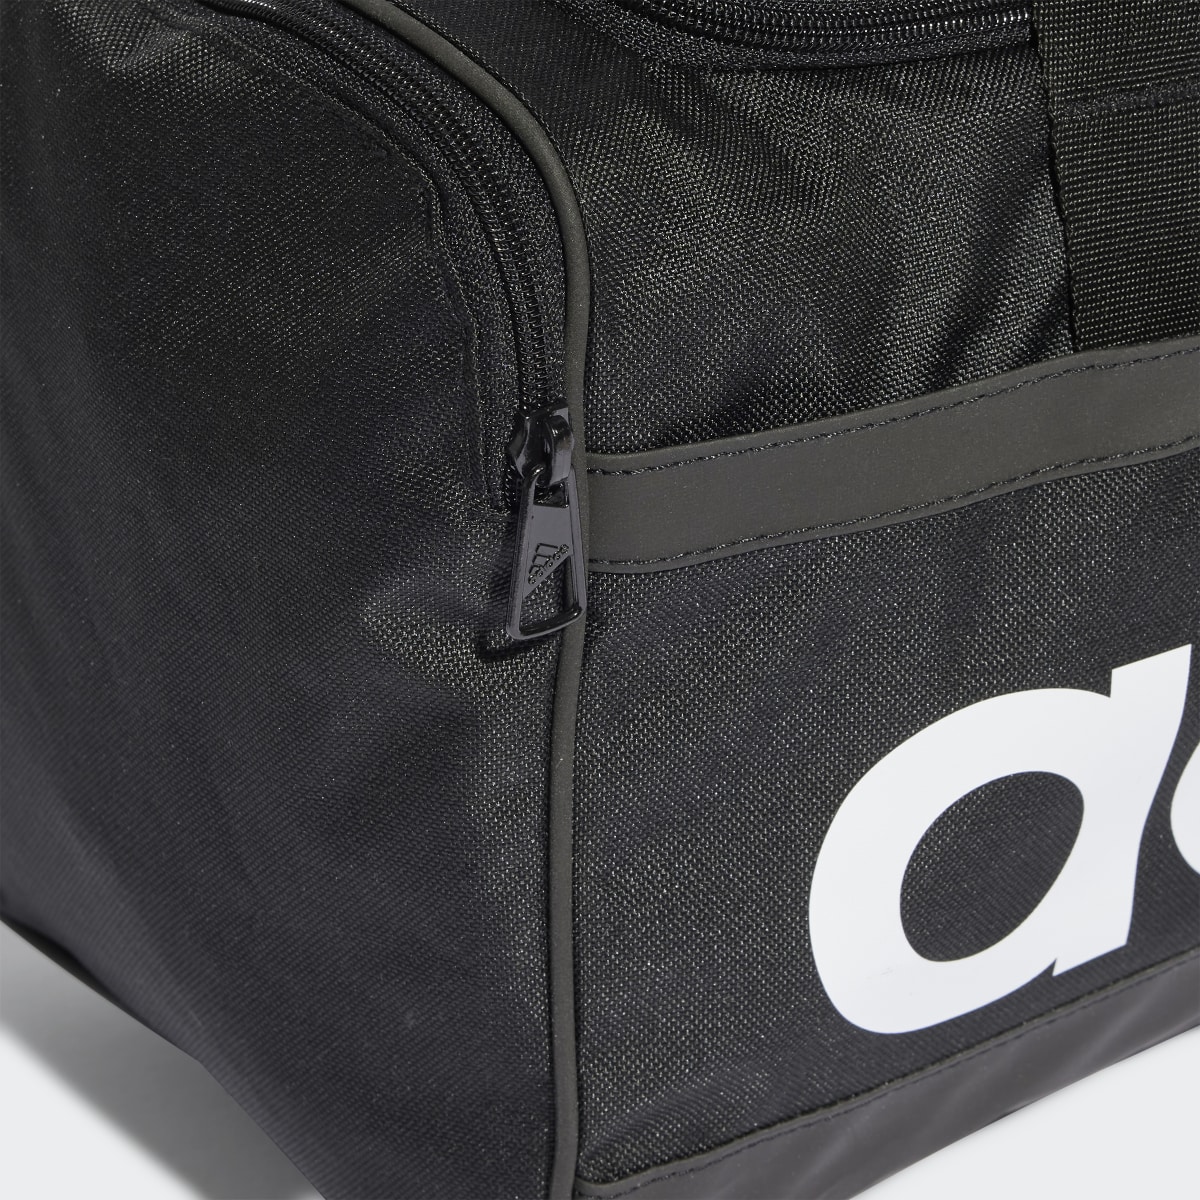 adidas Essentials Linear Duffel Bag Medium - Black | adidas Canada